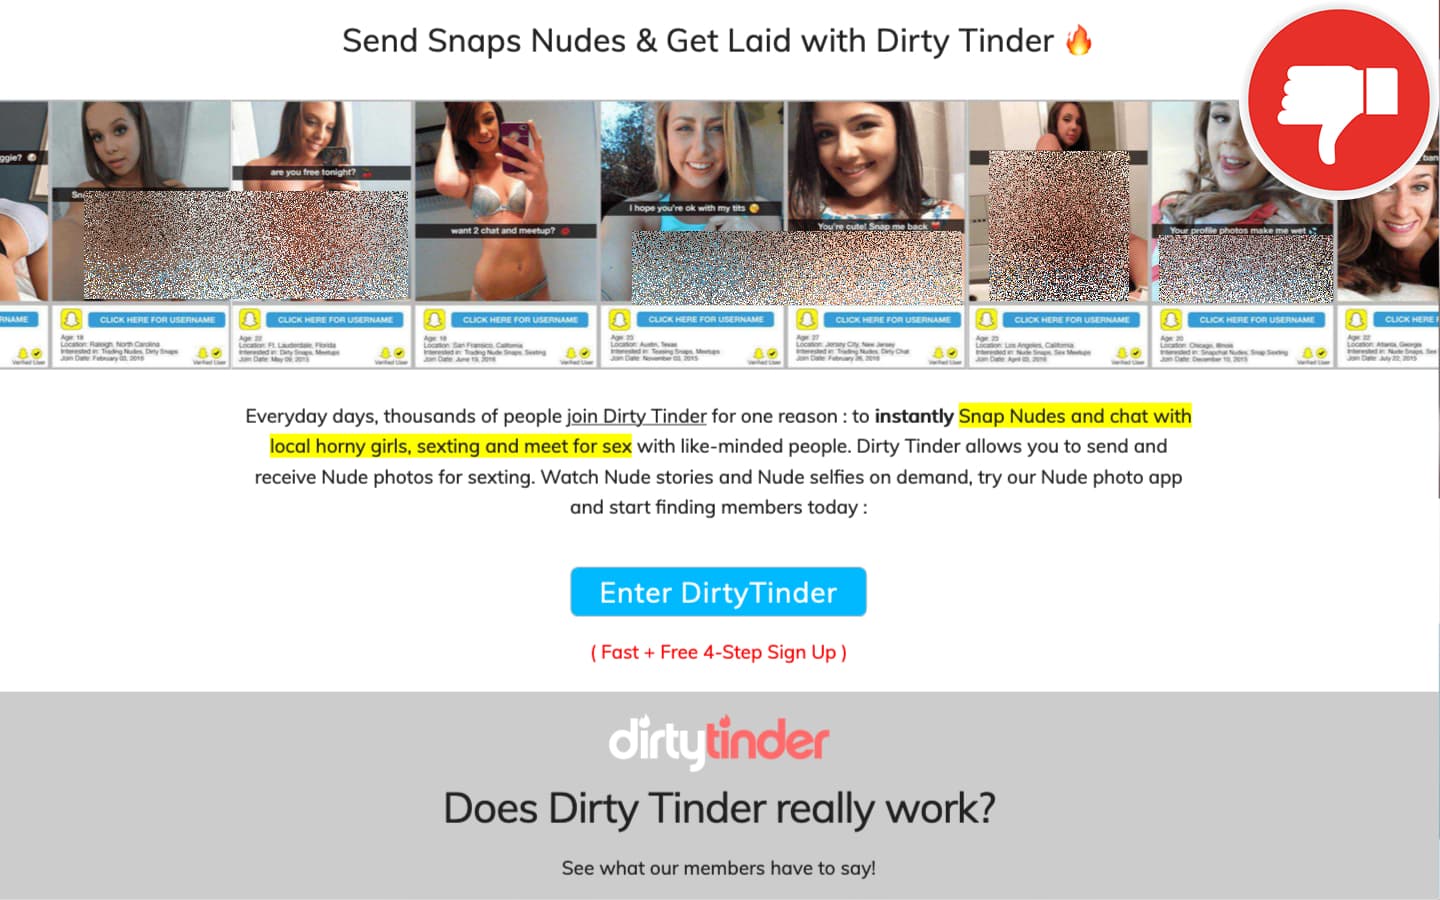 Review Dirty-Tinder.com scam